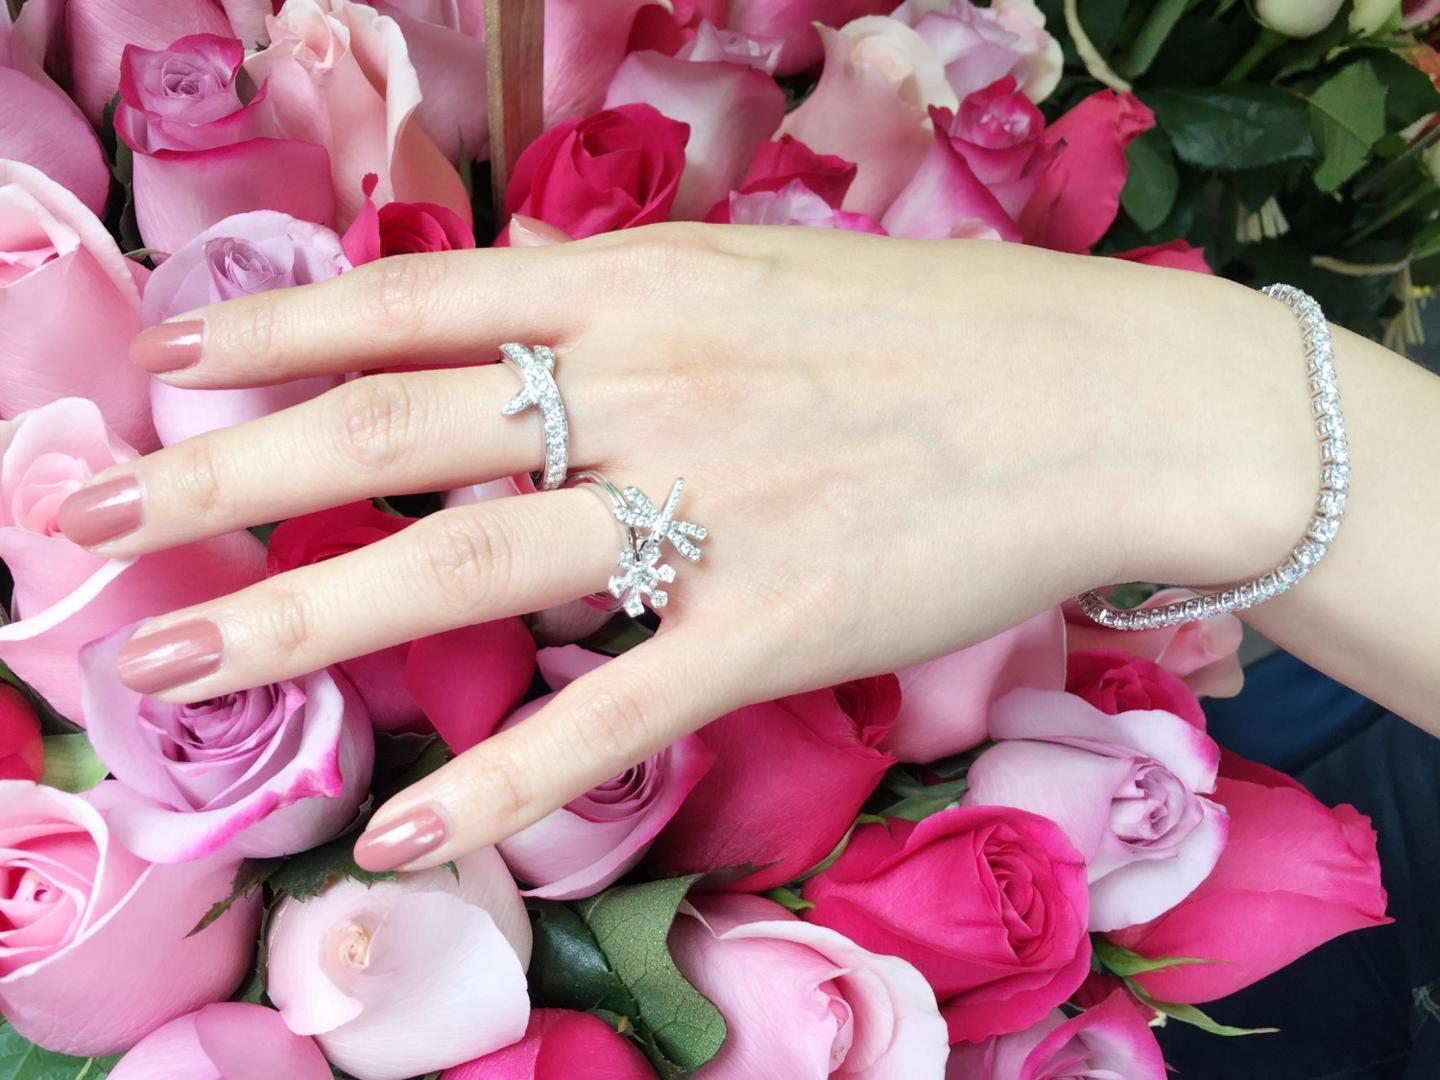 Comment acheter le bijou en diamant parfait pour la Saint-Valentin?